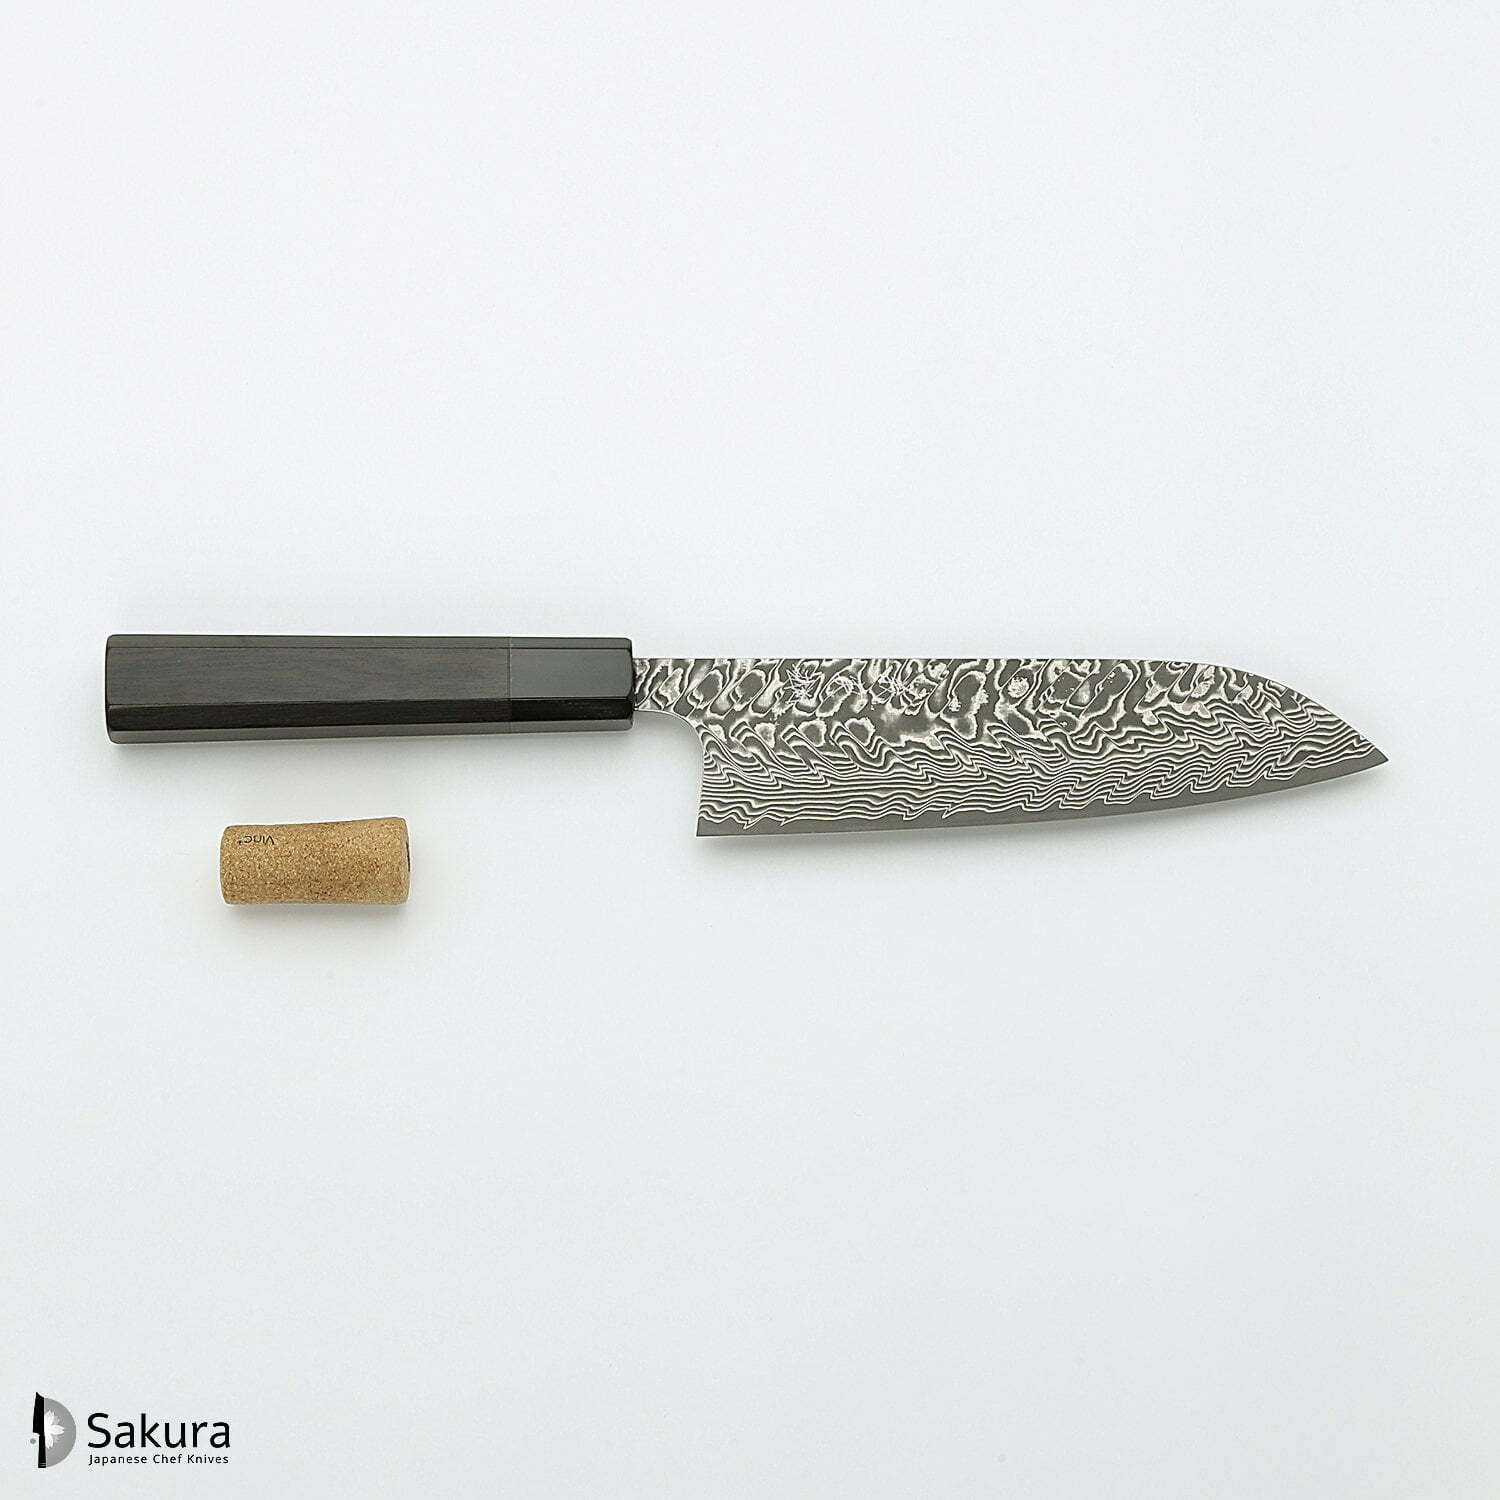 סכין רב-תכליתית סָנטוֹקוּ 165מ״מ מחושלת בעבודת יד 3 שכבות: פלדת פחמן יפנית מתקדמת מסוג R2/SG2 עטופה פלדת דמשק אל-חלד גימור דמשק יושימי קאטו יפן